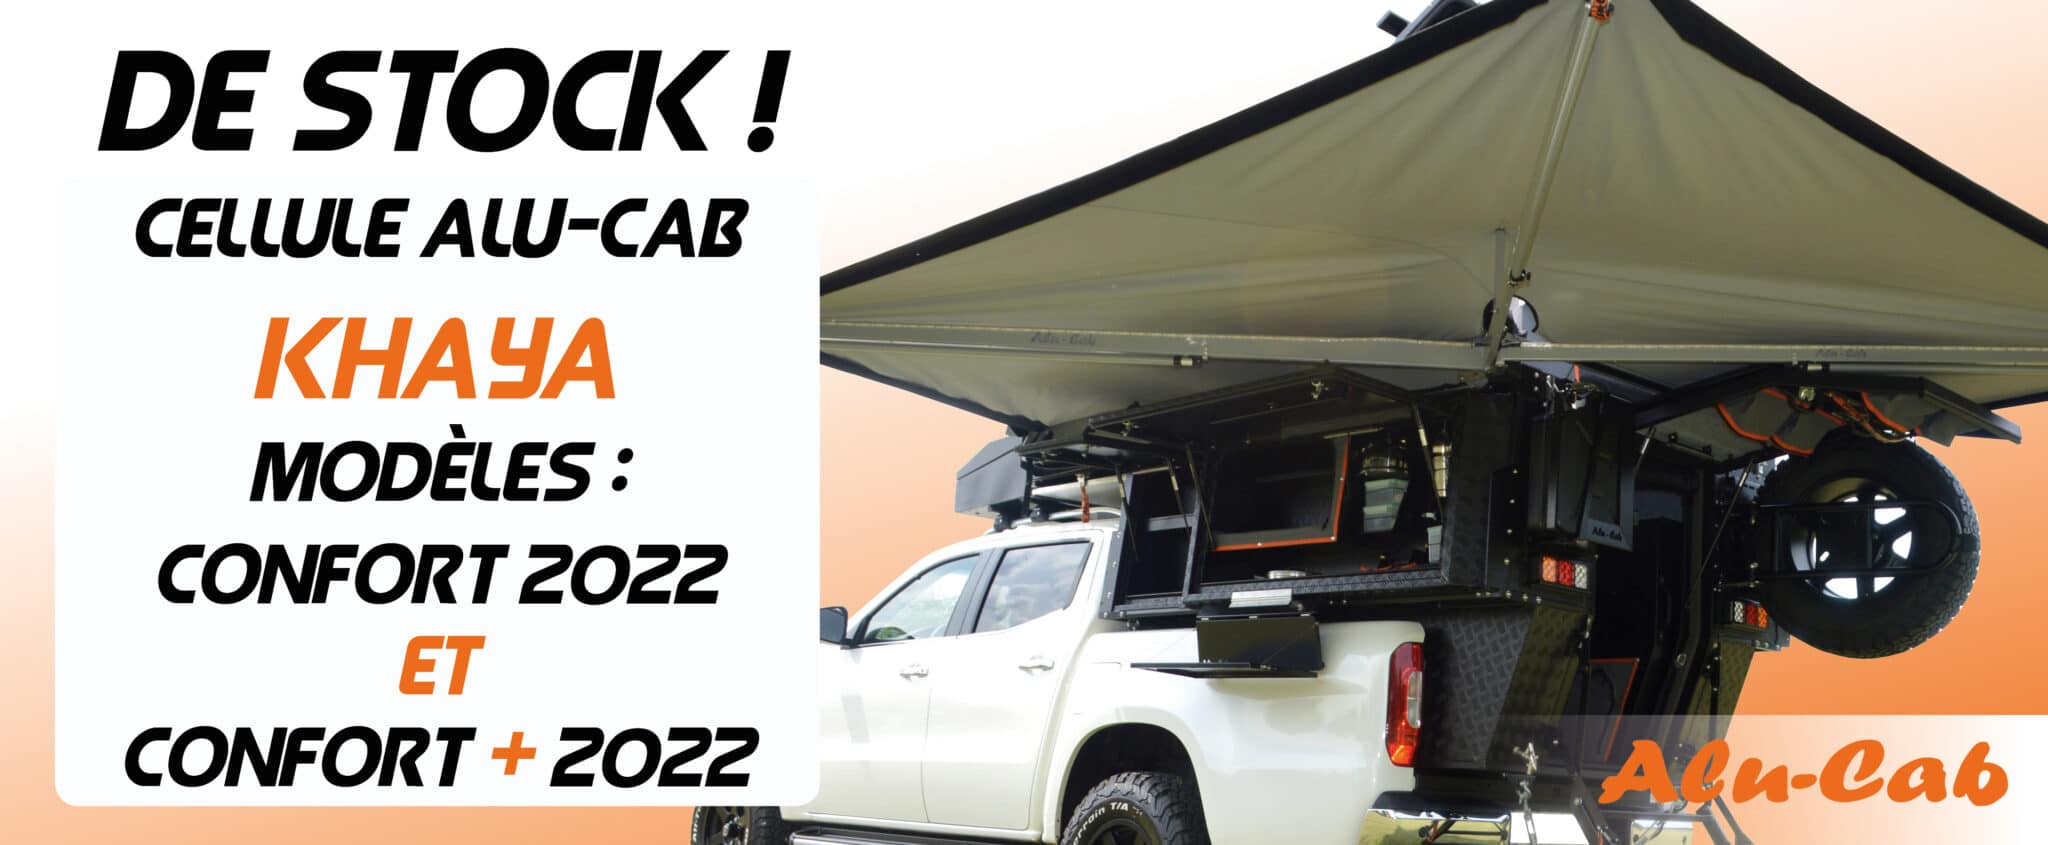 Cellule pick-up Alu-Cab Khaya Camper